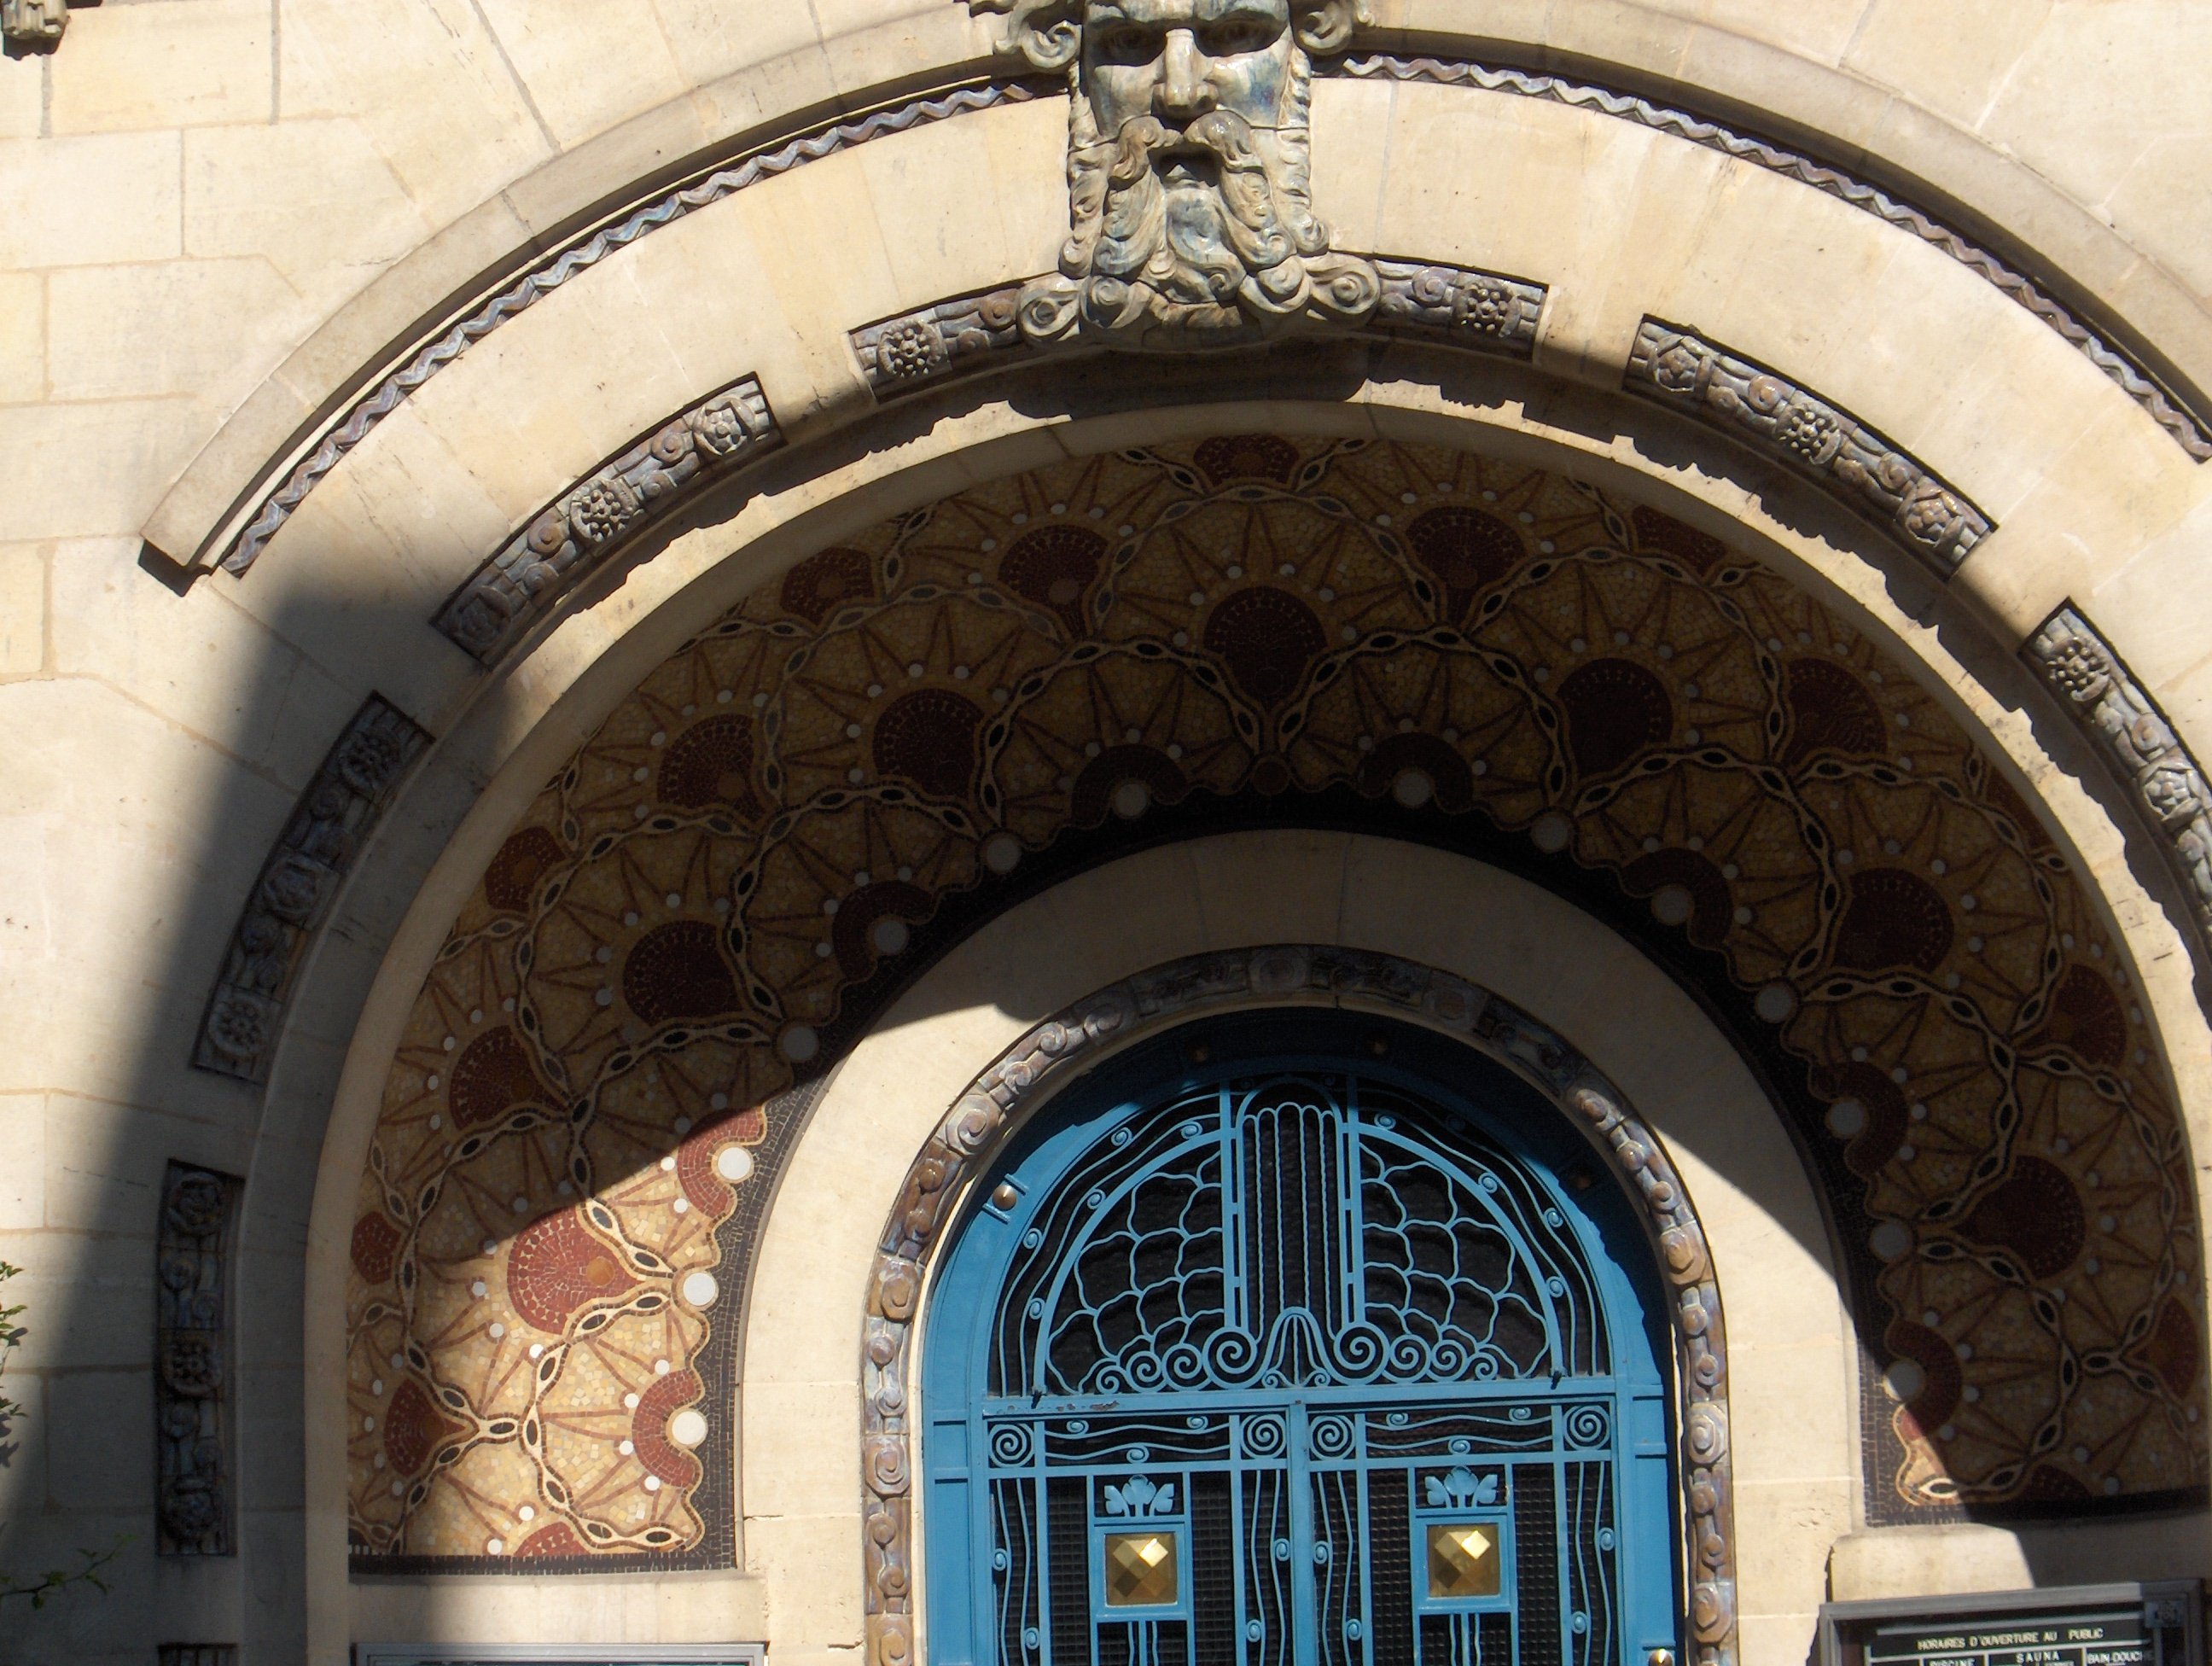 Entrée art déco avec une mosaïque à motifs géométriques ocres disposés en alcôve autour de la porte principale, bleue.